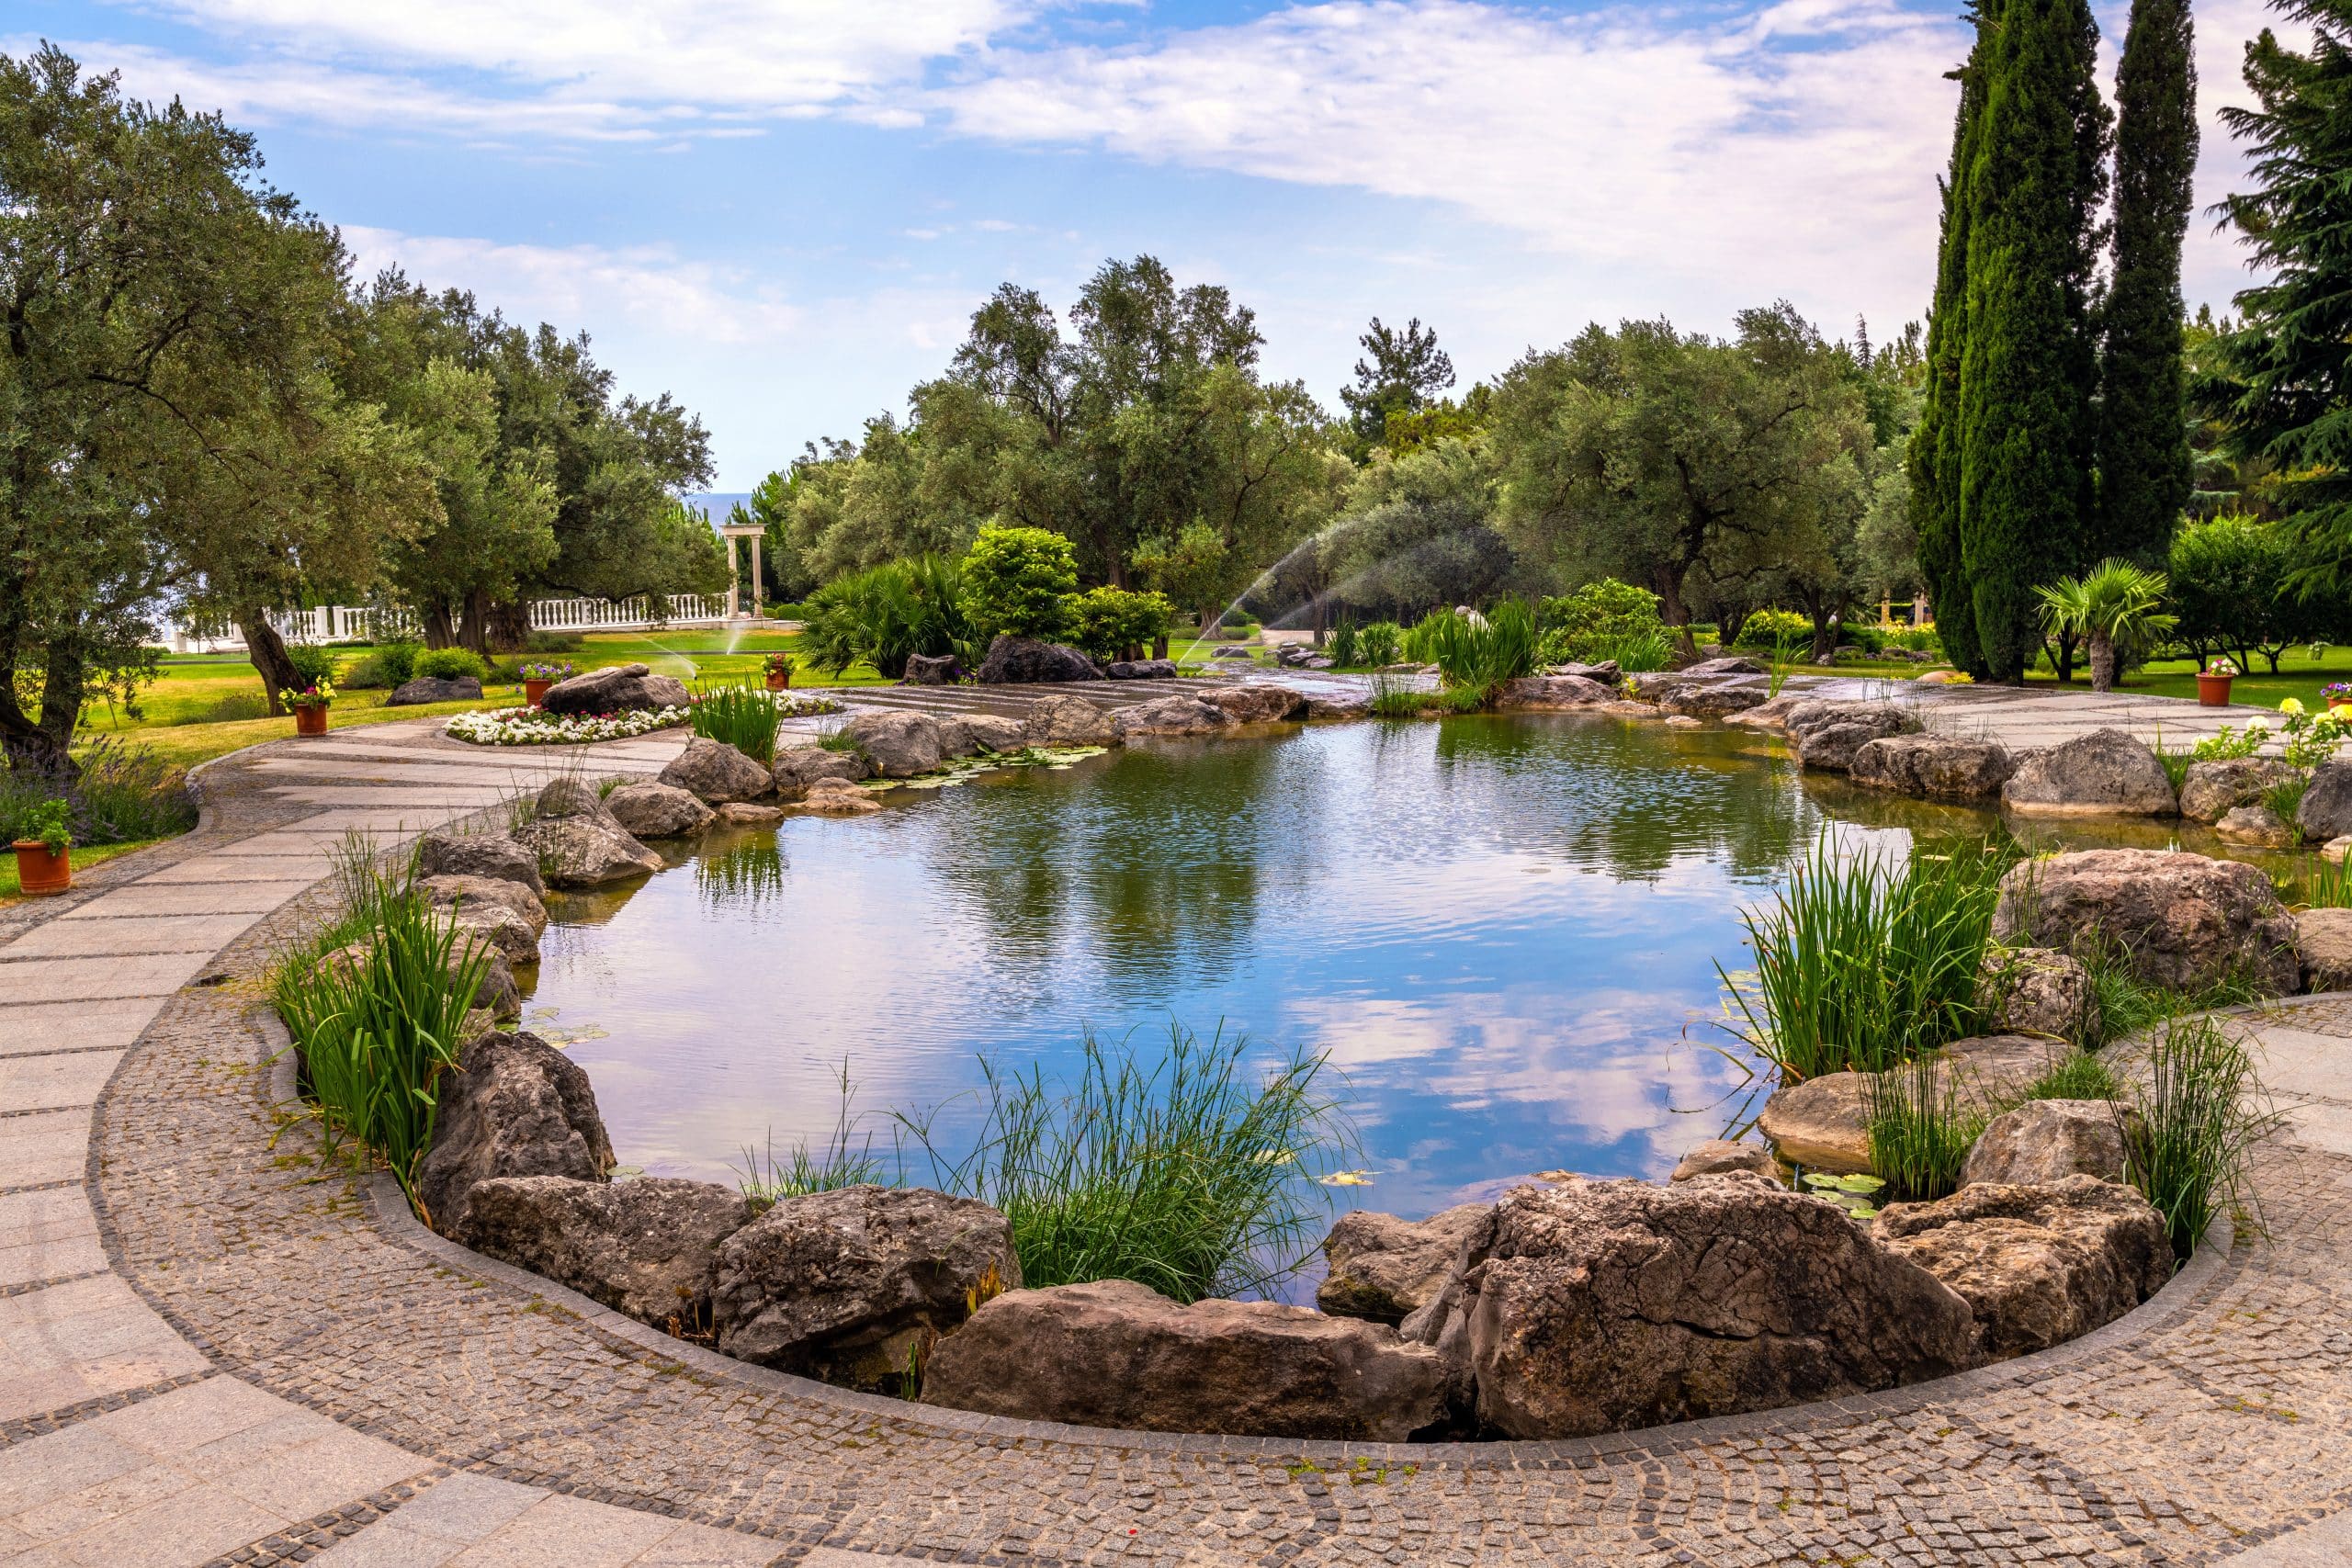 Gartenanlage mit schönem Teich und schönem Wegdesign.